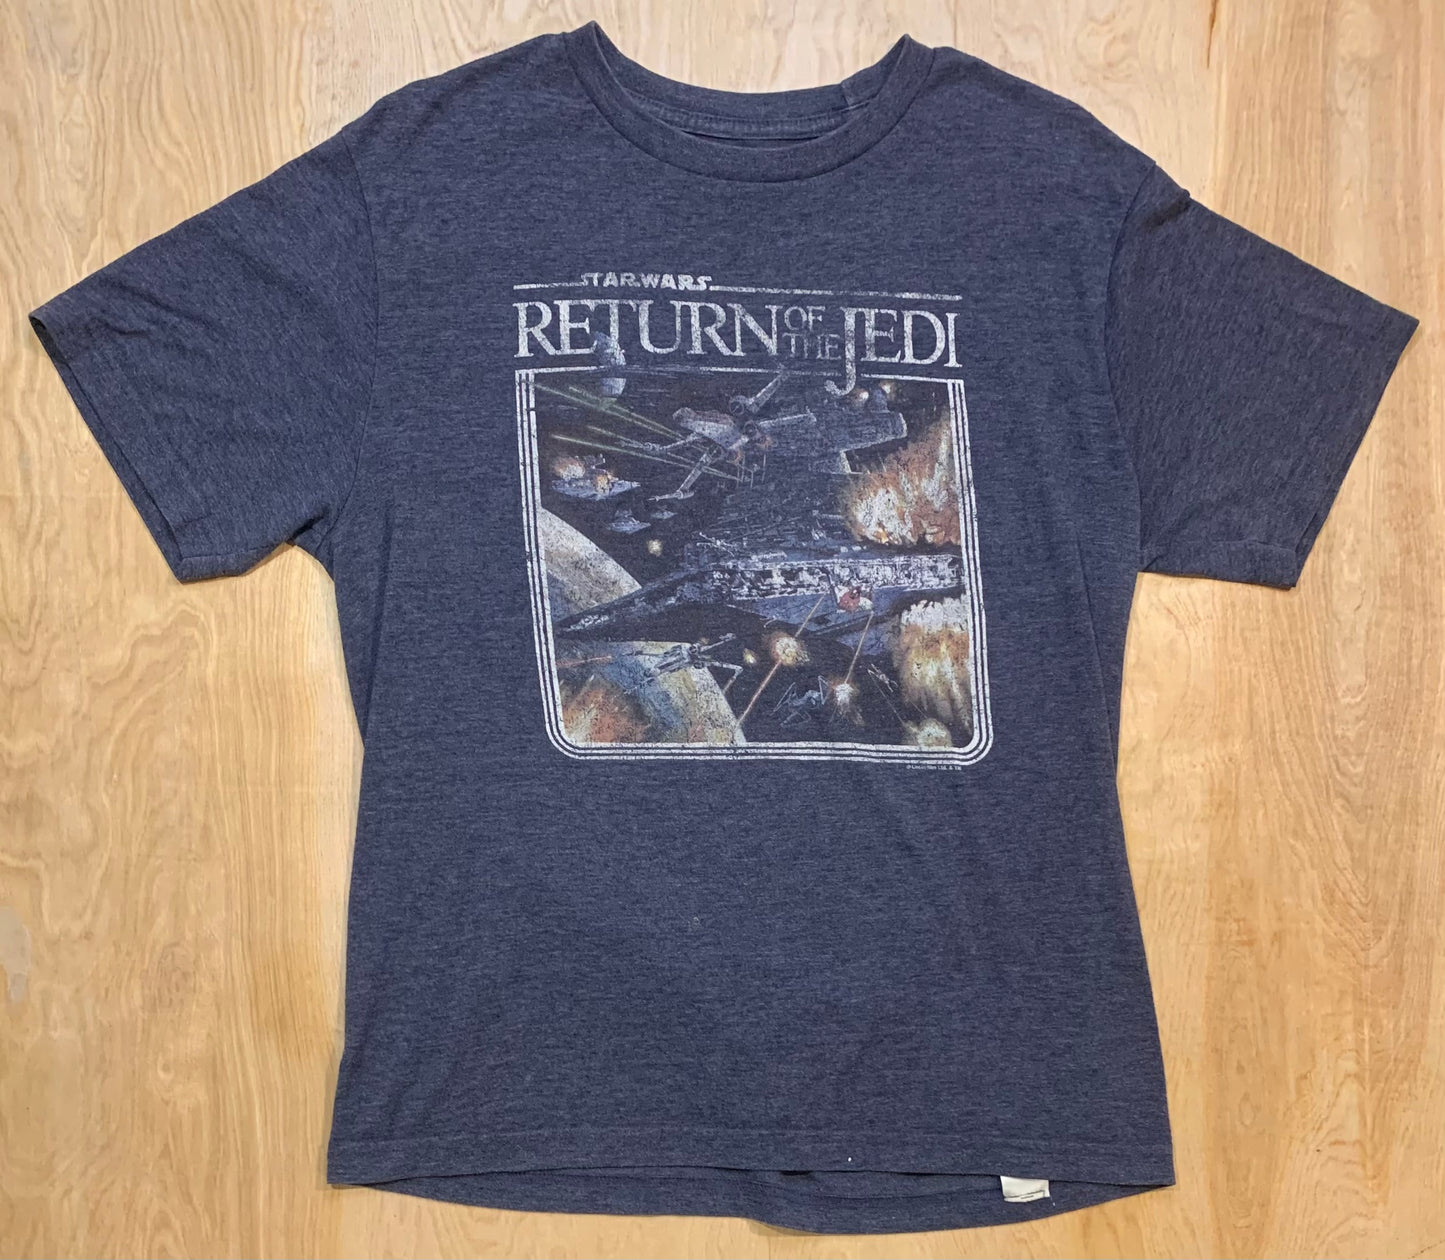 Star Wars: Return of the Jedi T-shirt